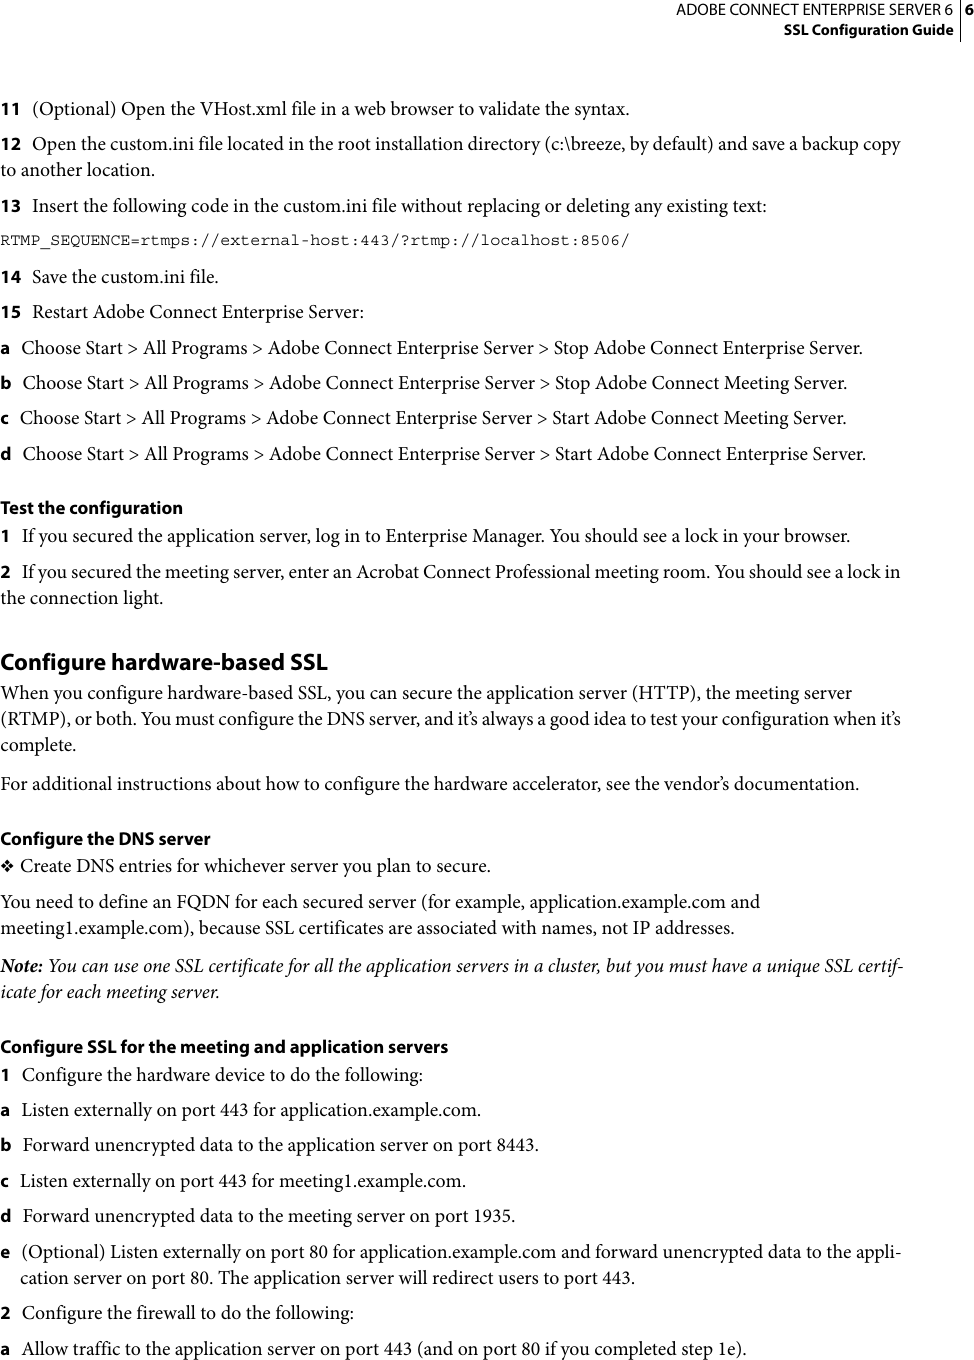 Page 9 of 12 - Adobe Connect Enterprise Server 6 SSL Configuration Guide Entreprise - 6.0 En